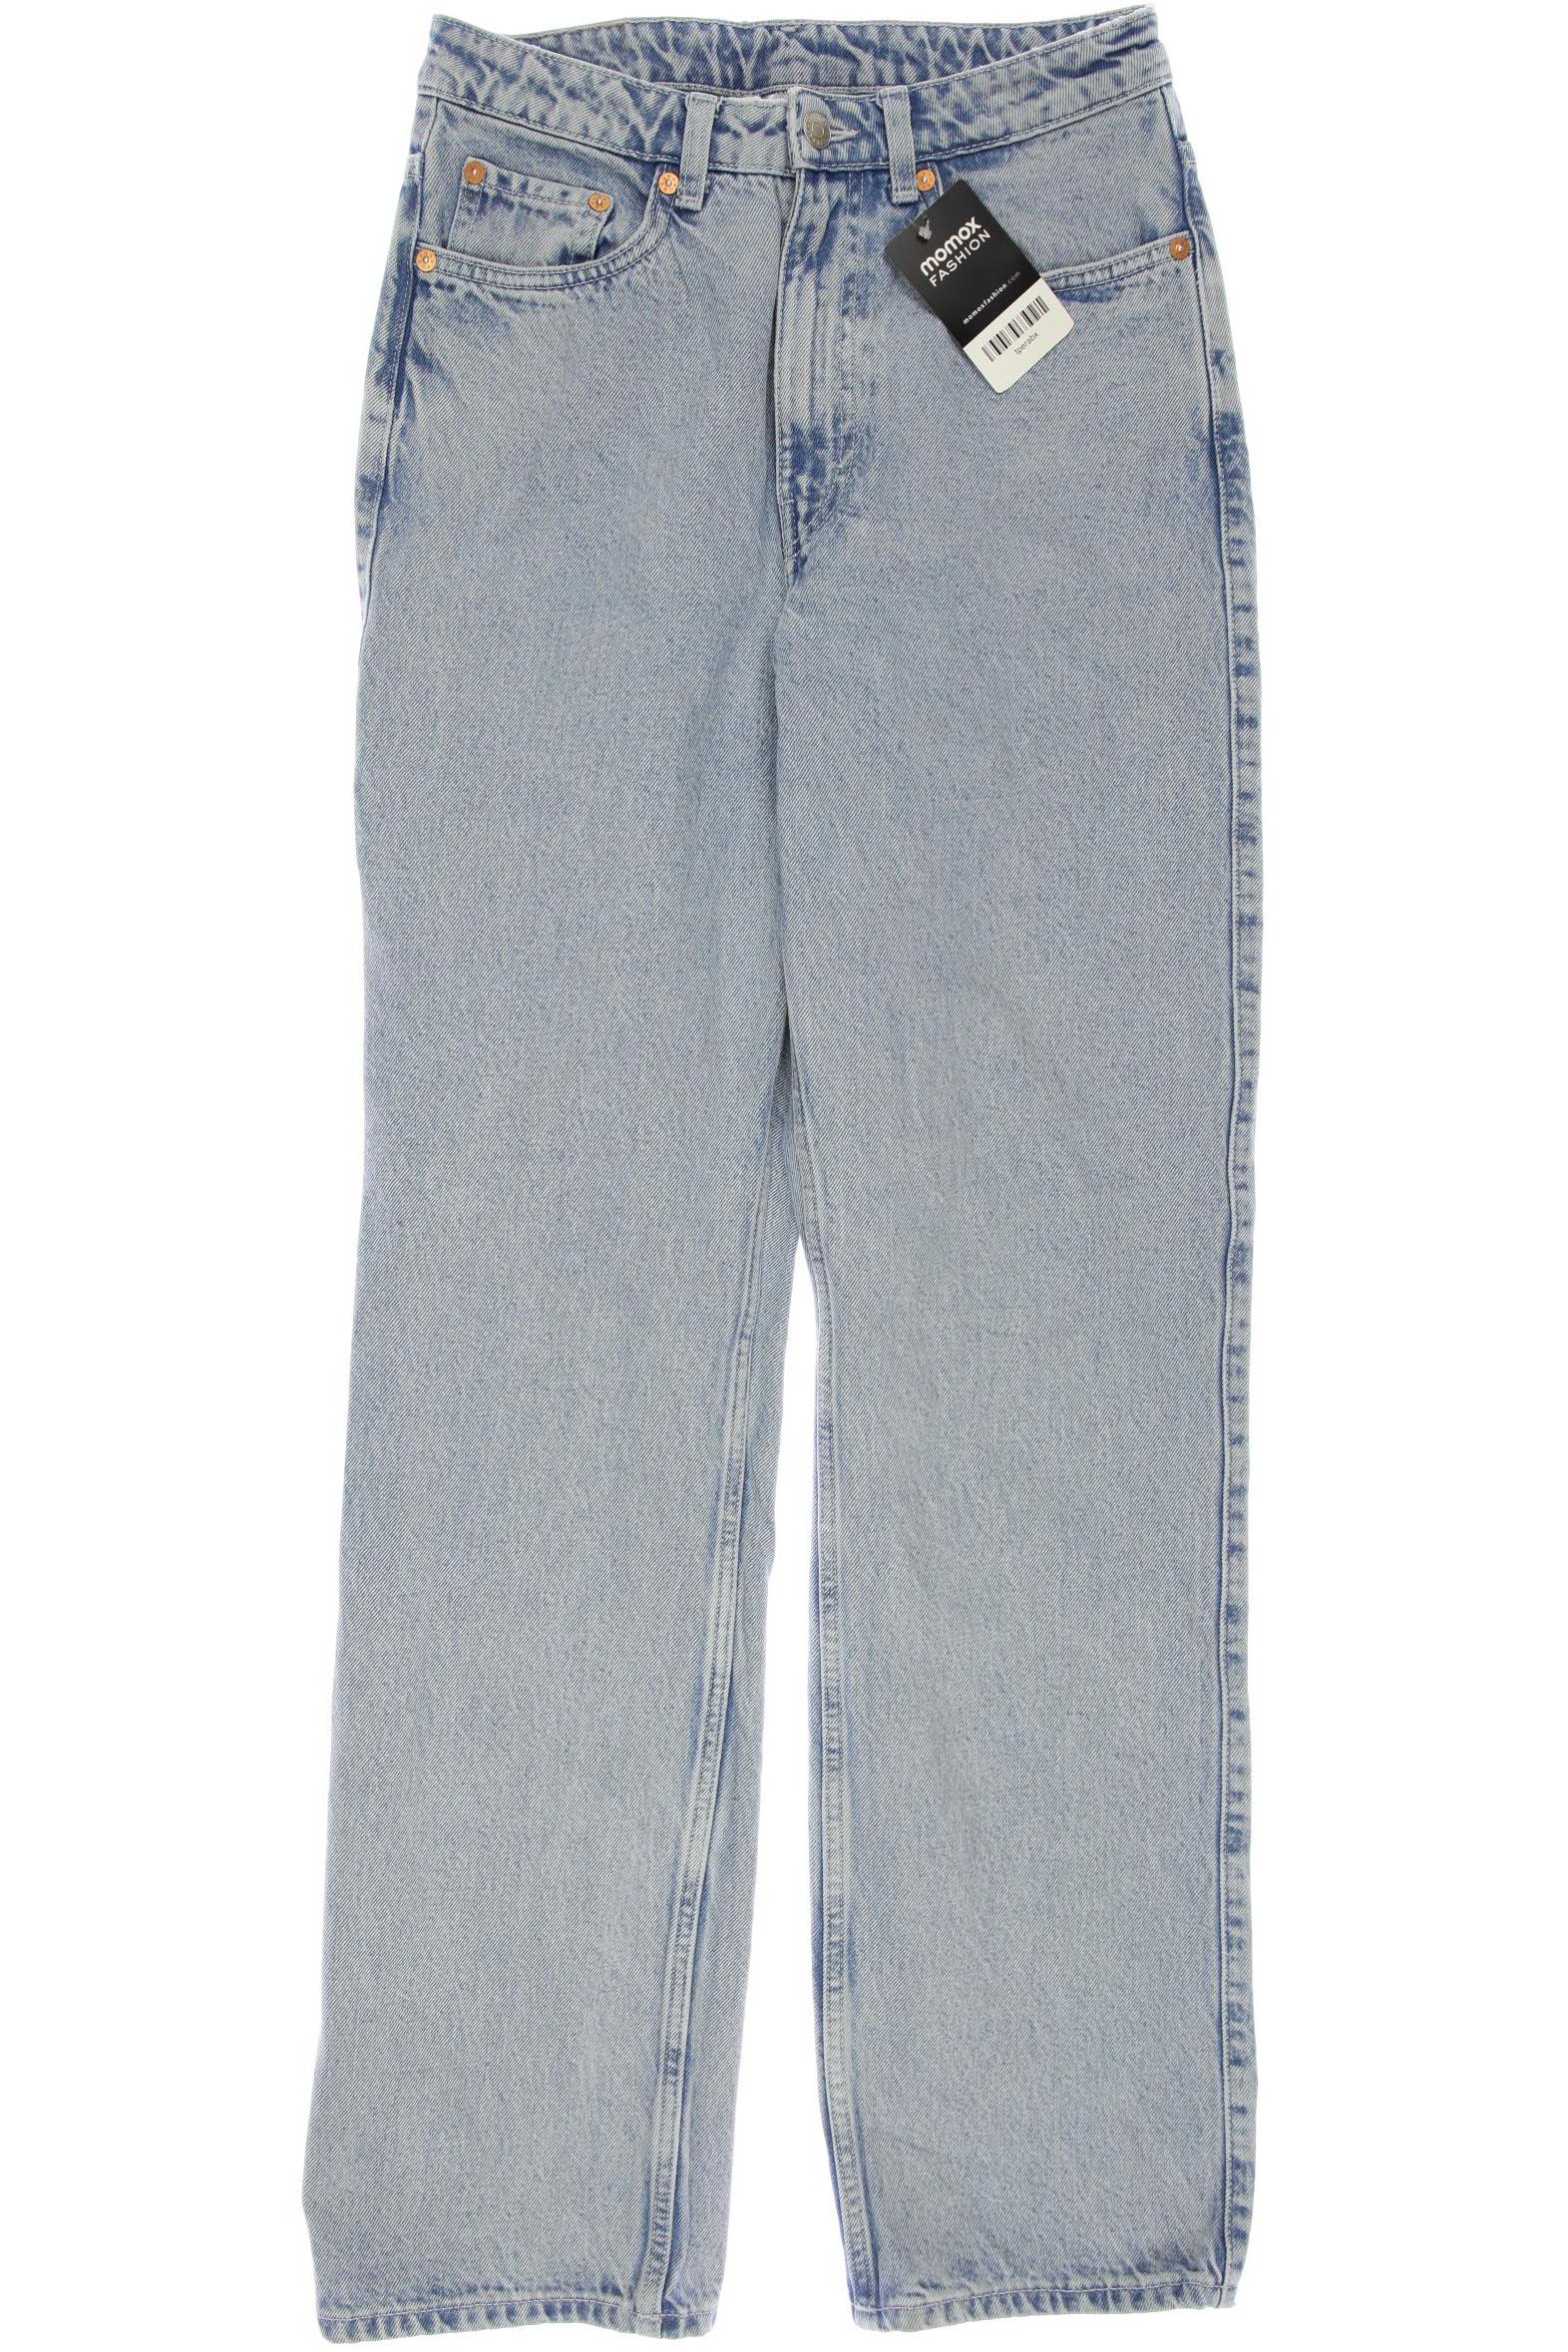 Weekday Damen Jeans, hellblau, Gr. 38 von Weekday